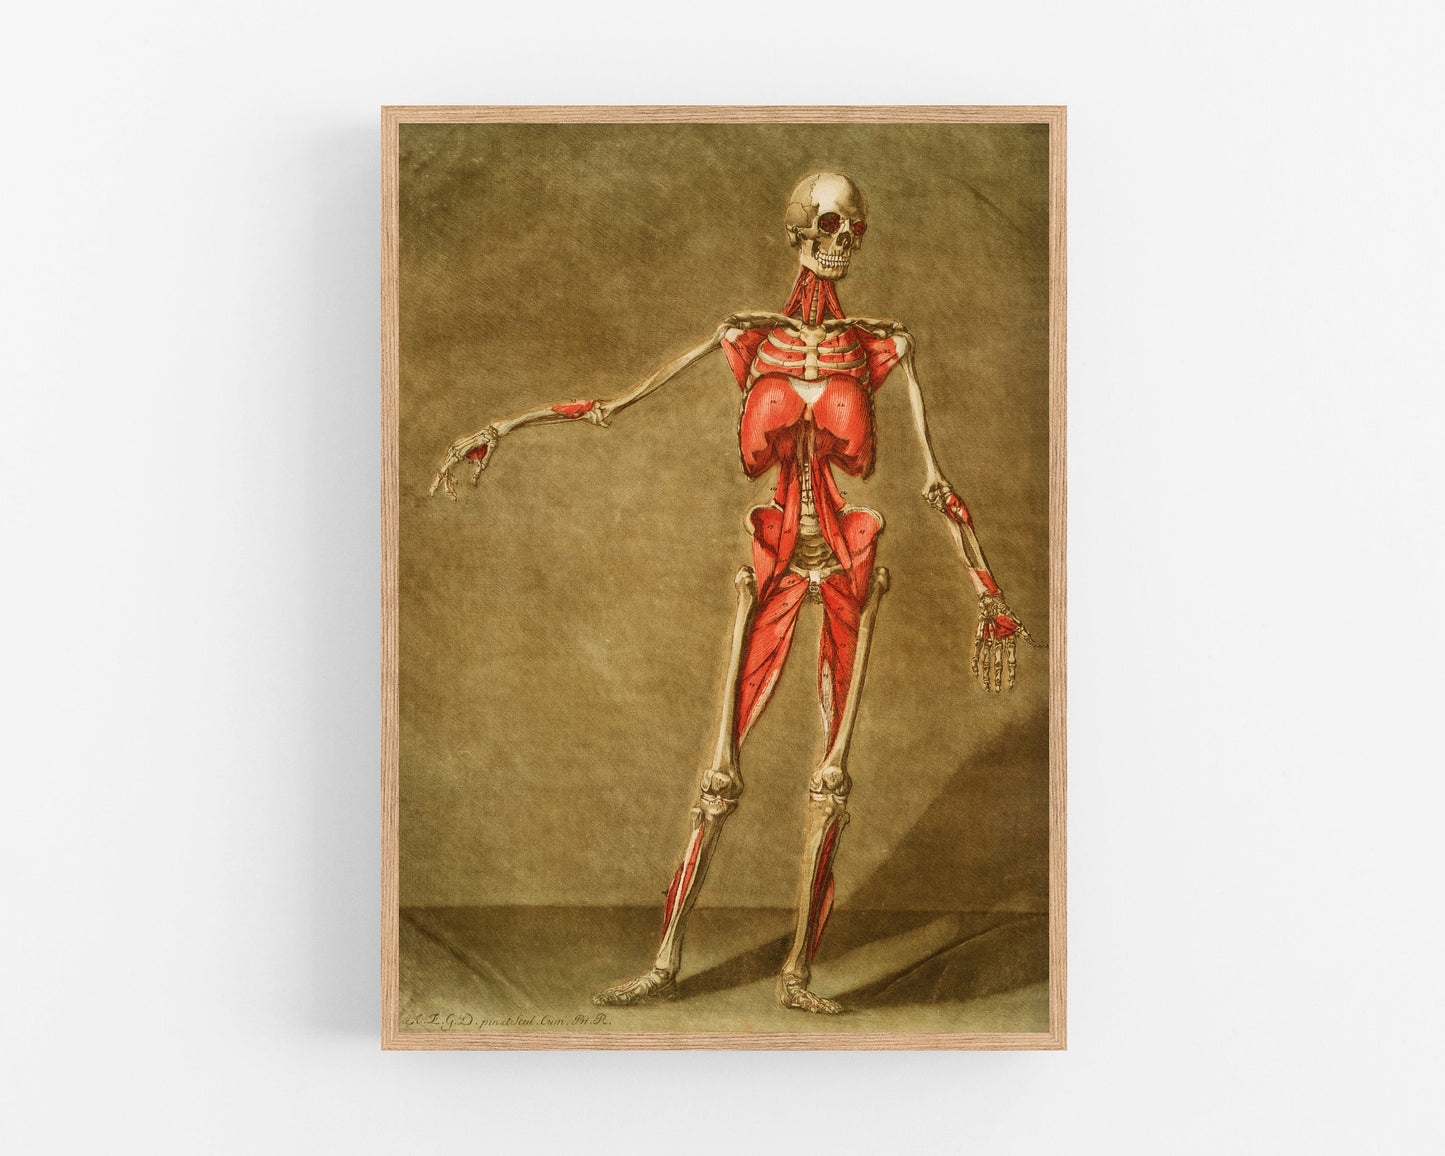 Vintage anatomical illustration | Skeleton and muscle | Giclée fine art print | Modern Vintage decor | Eco-friendly gift